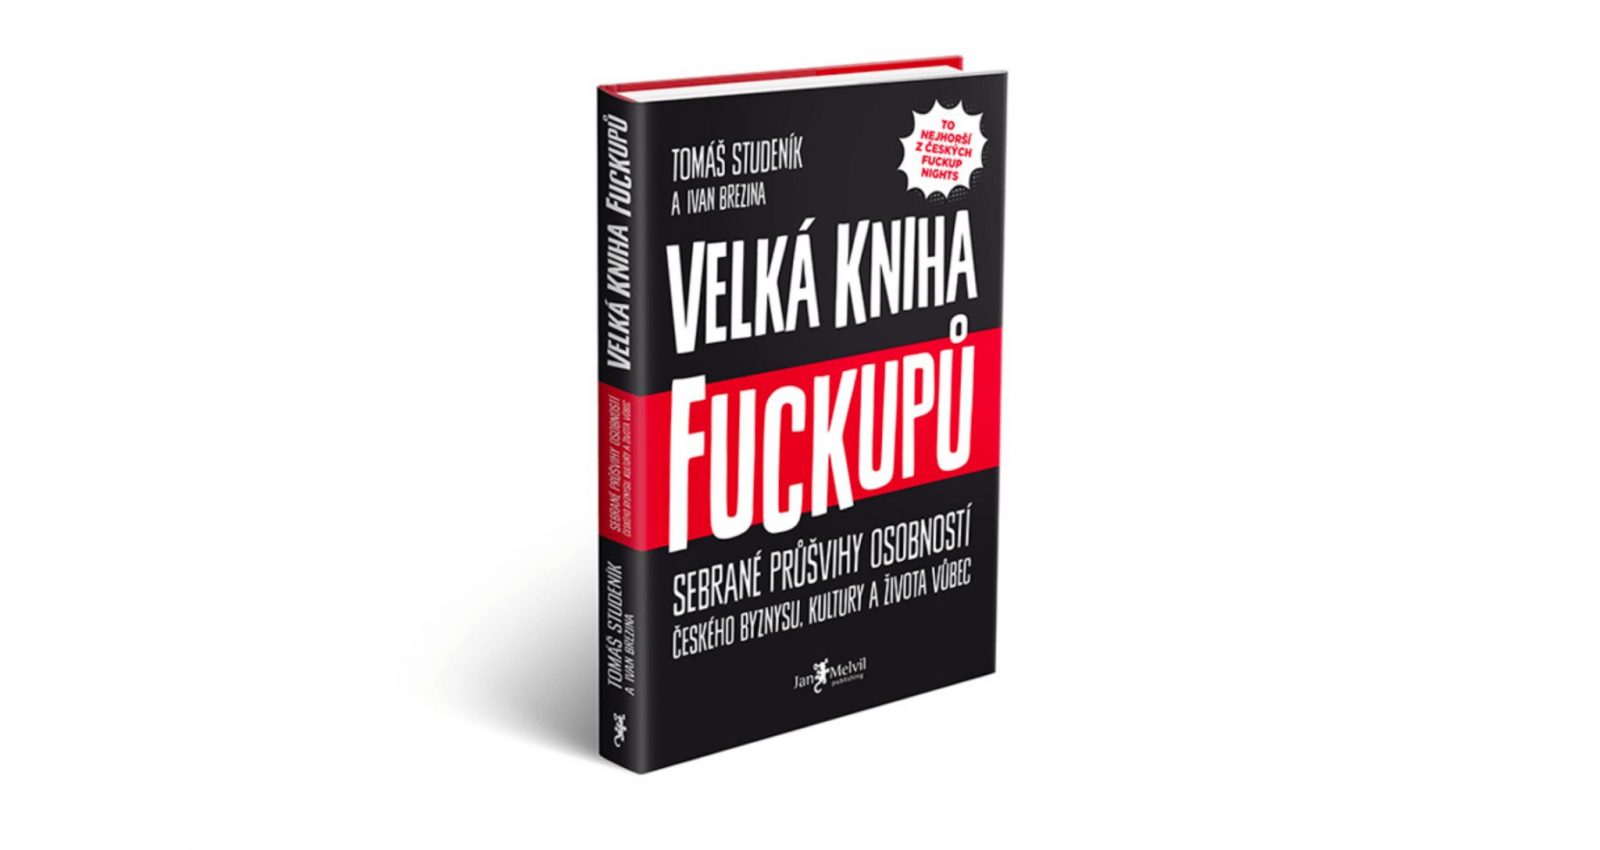 Velká kniha fuckupů – trnitá cestička VimVic.cz a dalších 40 nezdarů a zmarů